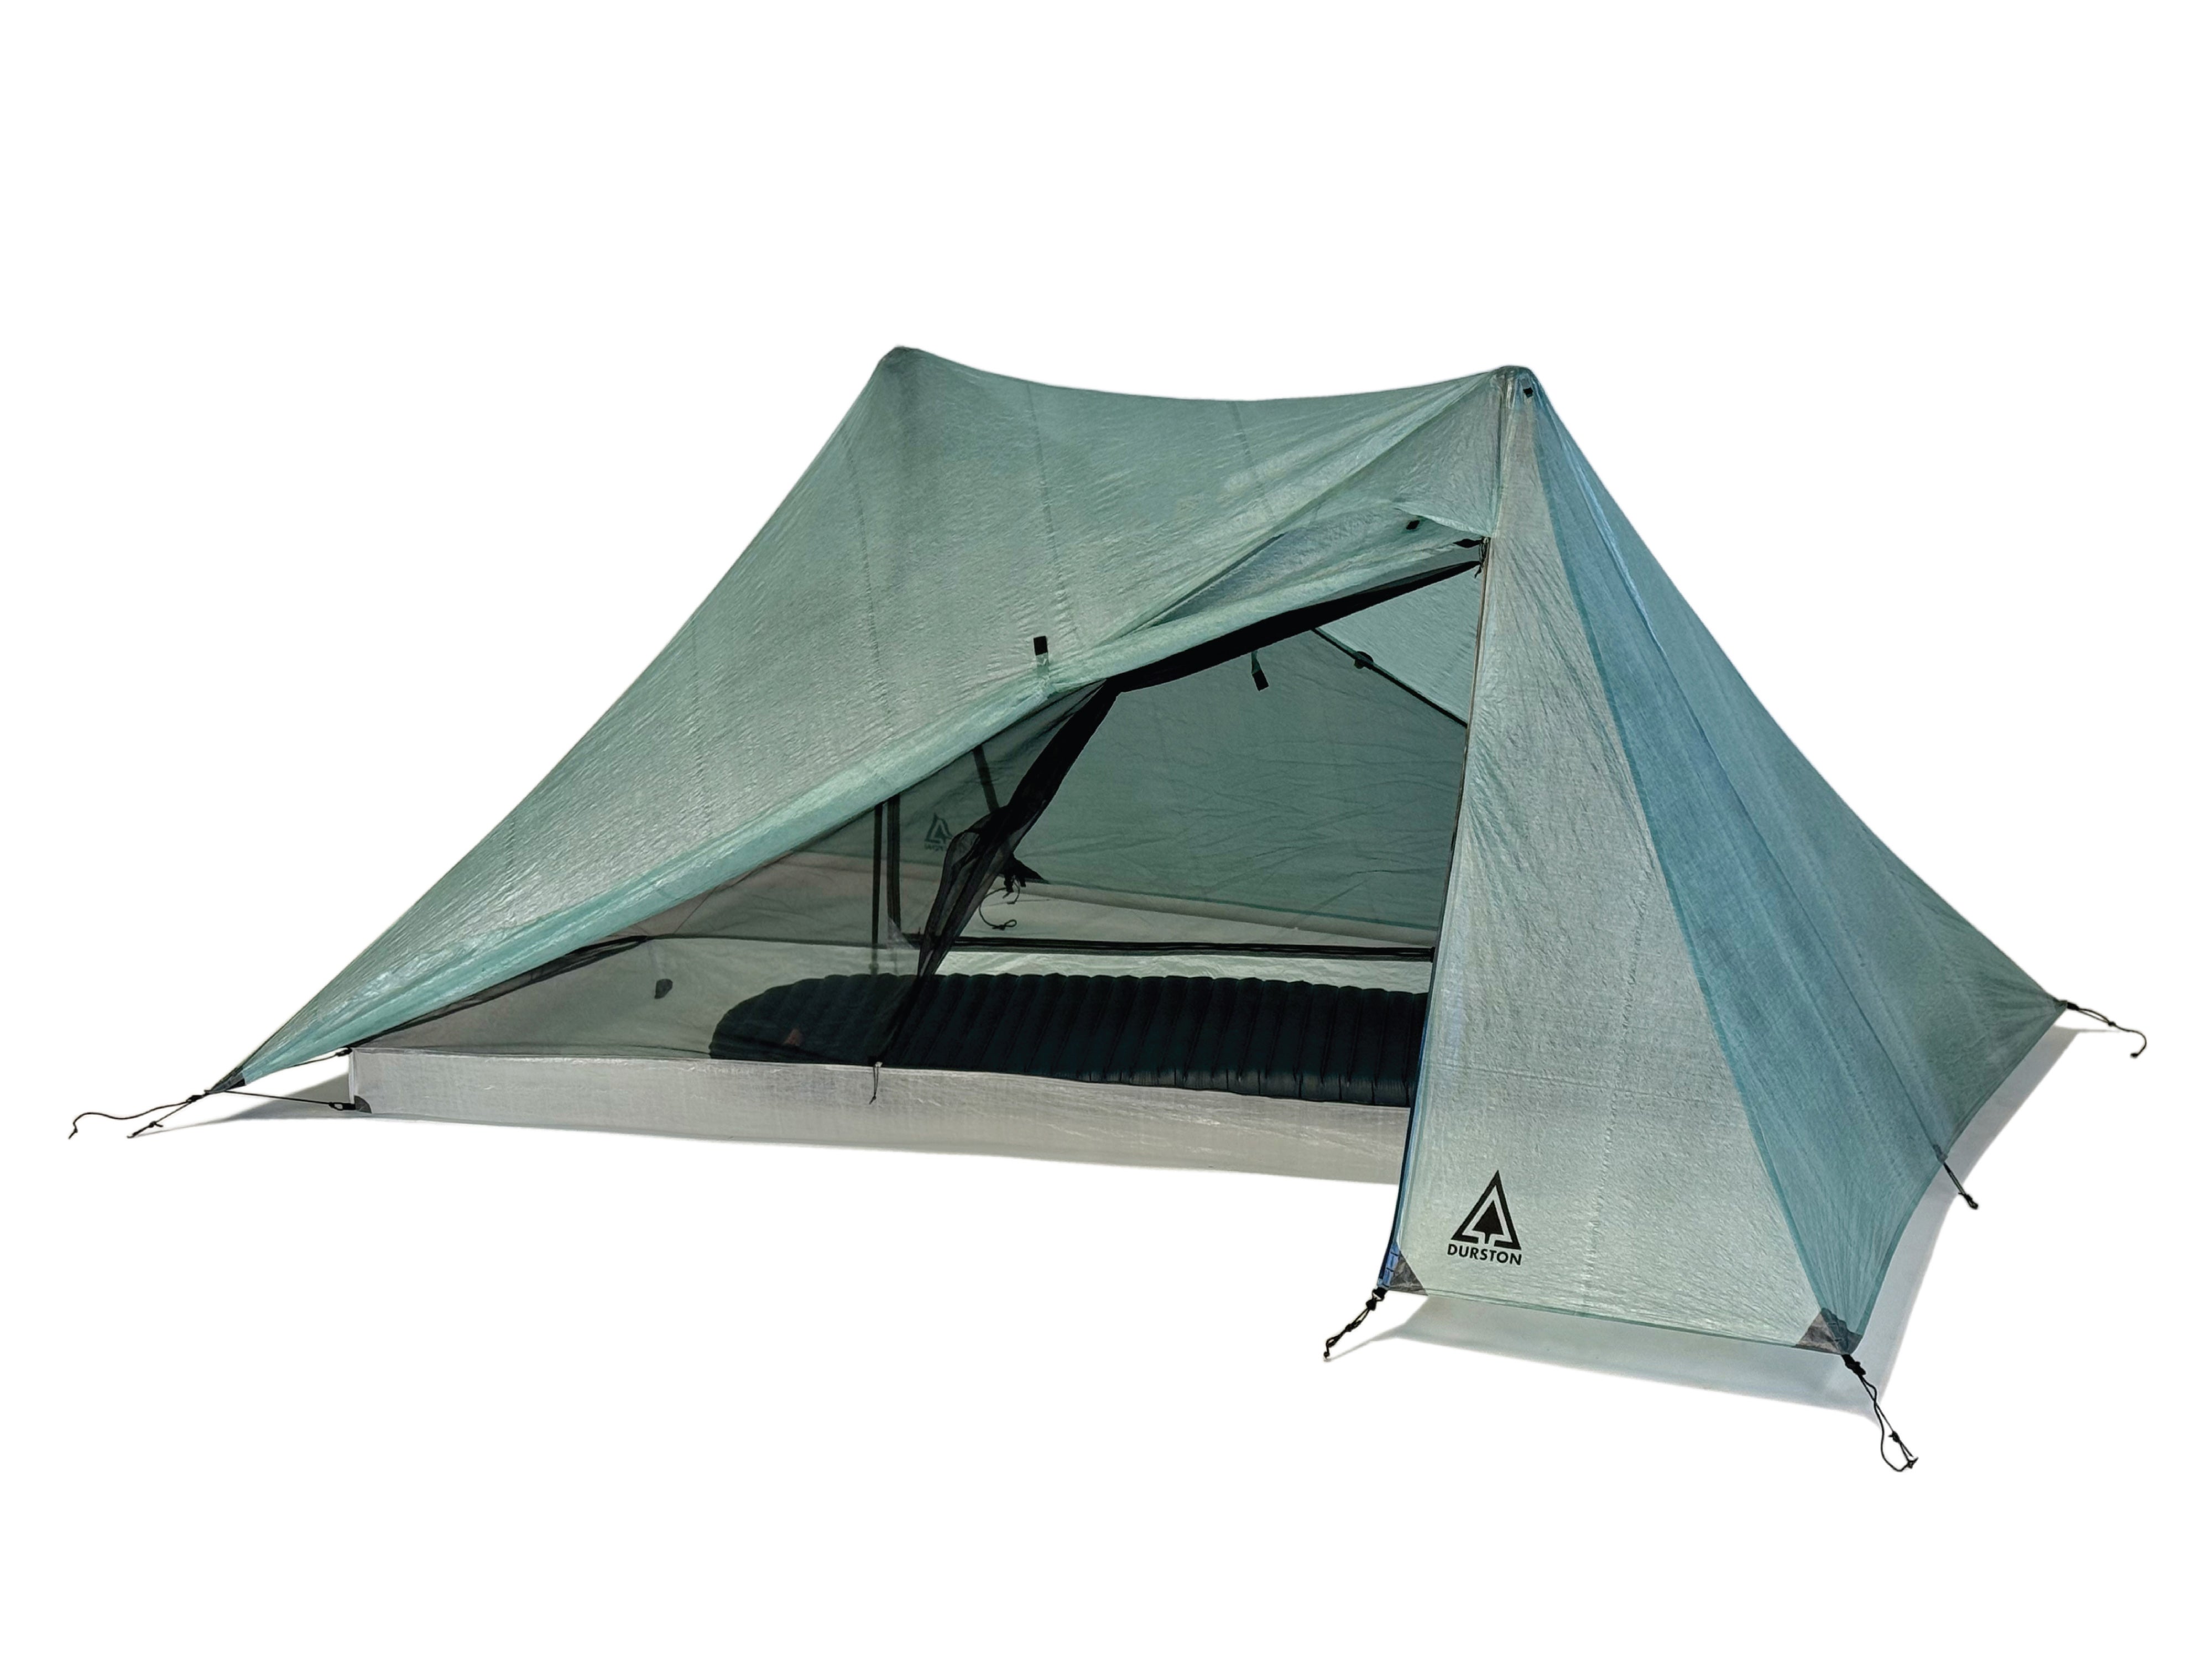 Achetez Ventilateur Portable Ventilateur de Camping Camping